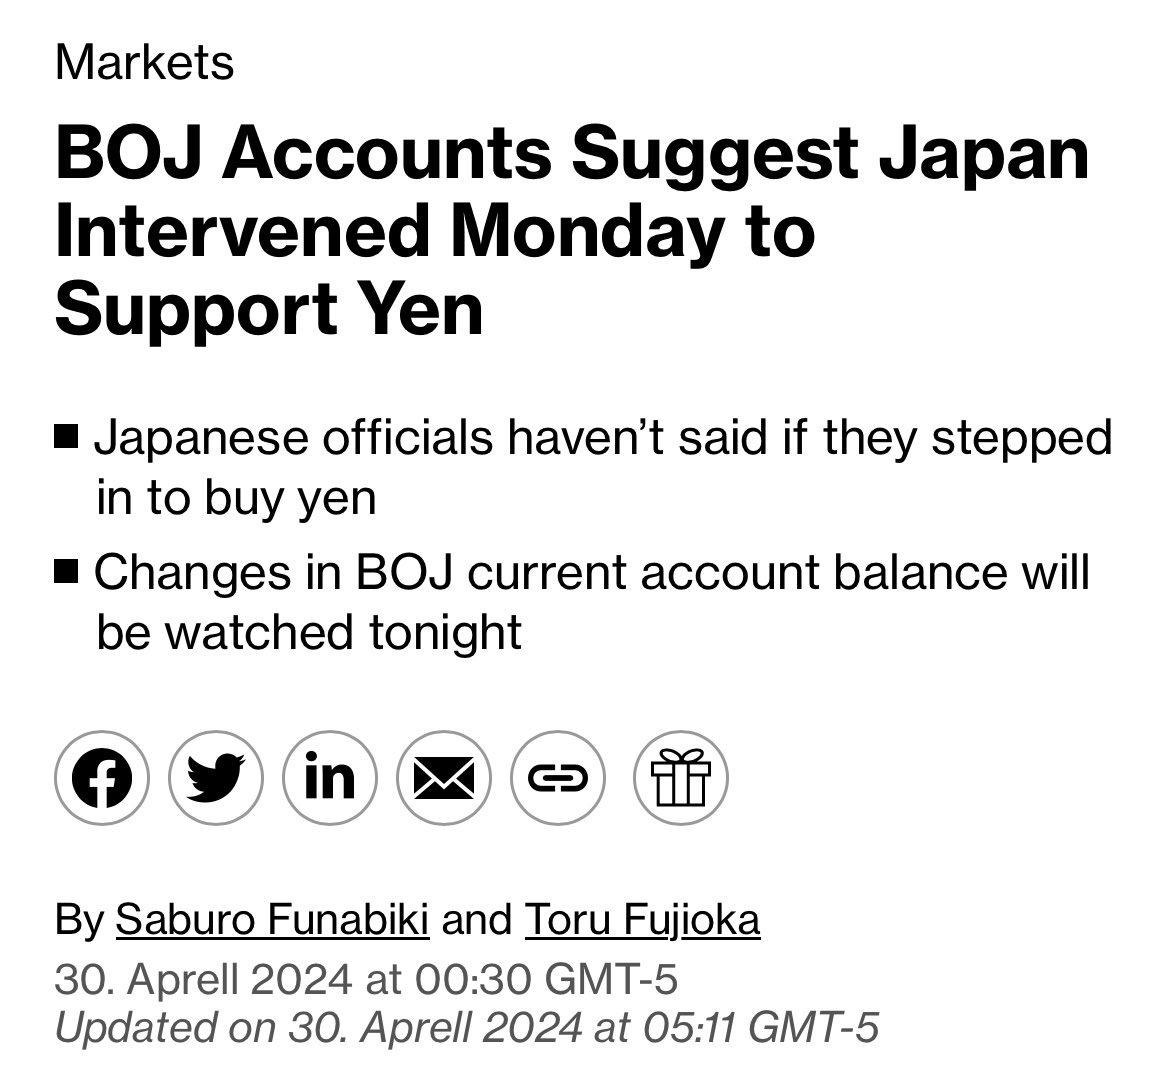 Verteidigung des Yen 🇯🇵 kostet bereits über 115 Milliarden US-Dollar

Laut Bloomberg soll die Bank of Japan am Montag 5,5 Billionen Yen (ca. 35. Milliarden US-Dollar) zur Währungsstabilisierung eingesetzt haben. 

Dabei verkauft sie US-Dollar und kauft dafür Yen an, den sie im